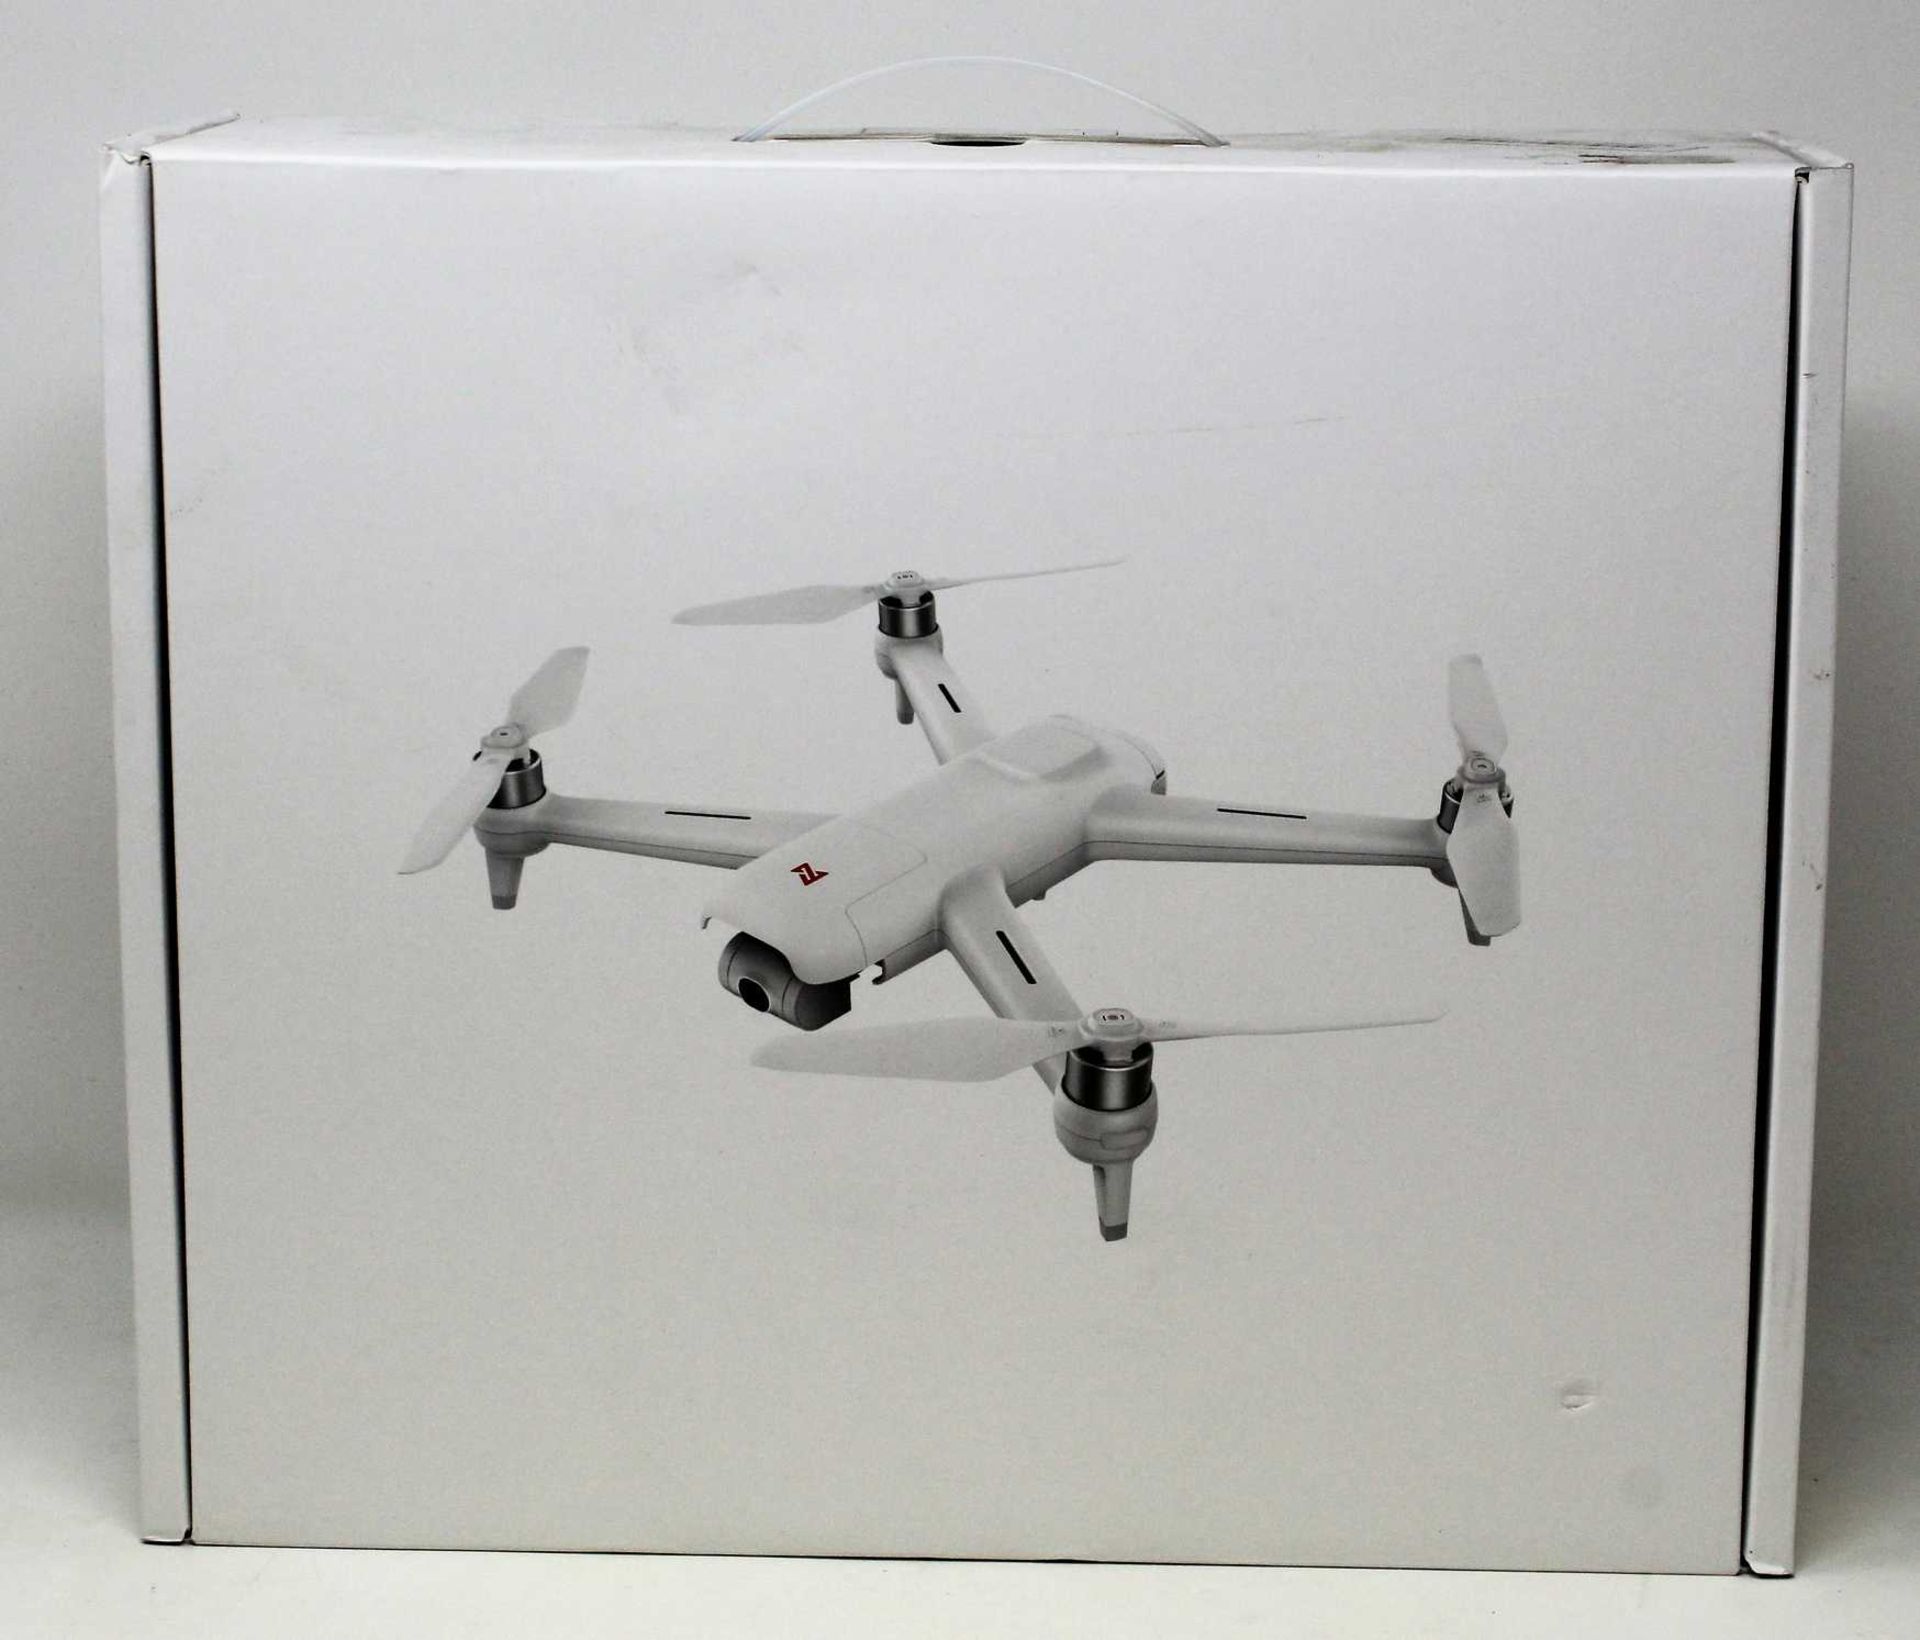 A boxed as new FIMI A3 5.8G 1KM 1080P FPV Quadcopter Drone in White (Model: FMWRJ01A3) (UK plug